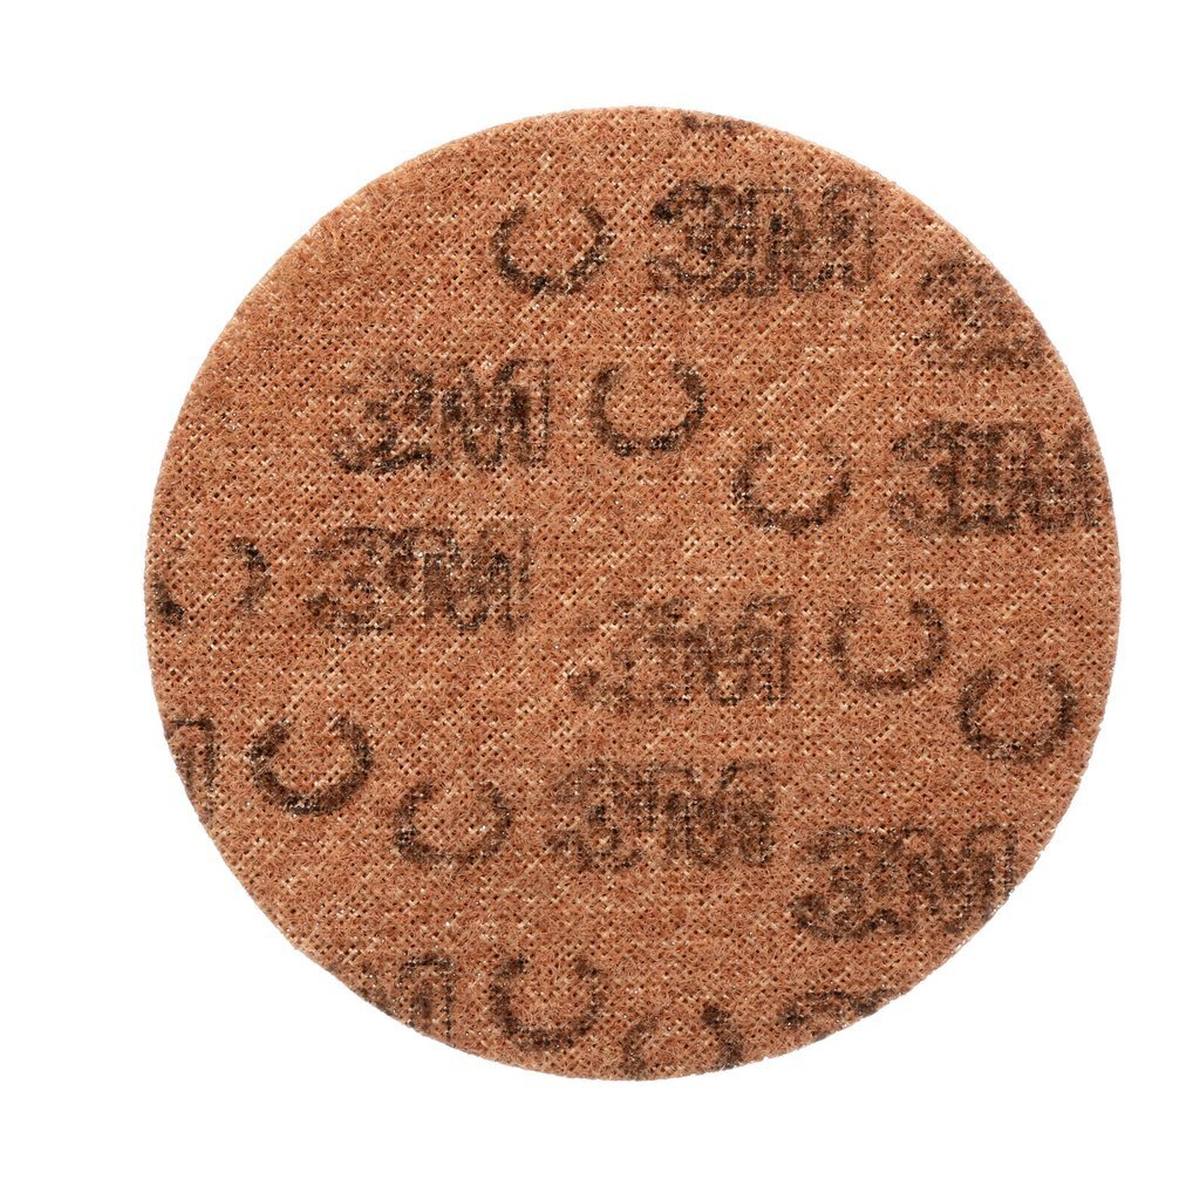 3M Scotch-Brite disco in tessuto non tessuto SC-DH senza centratura, marrone, 115 mm, A, ruvido #65333